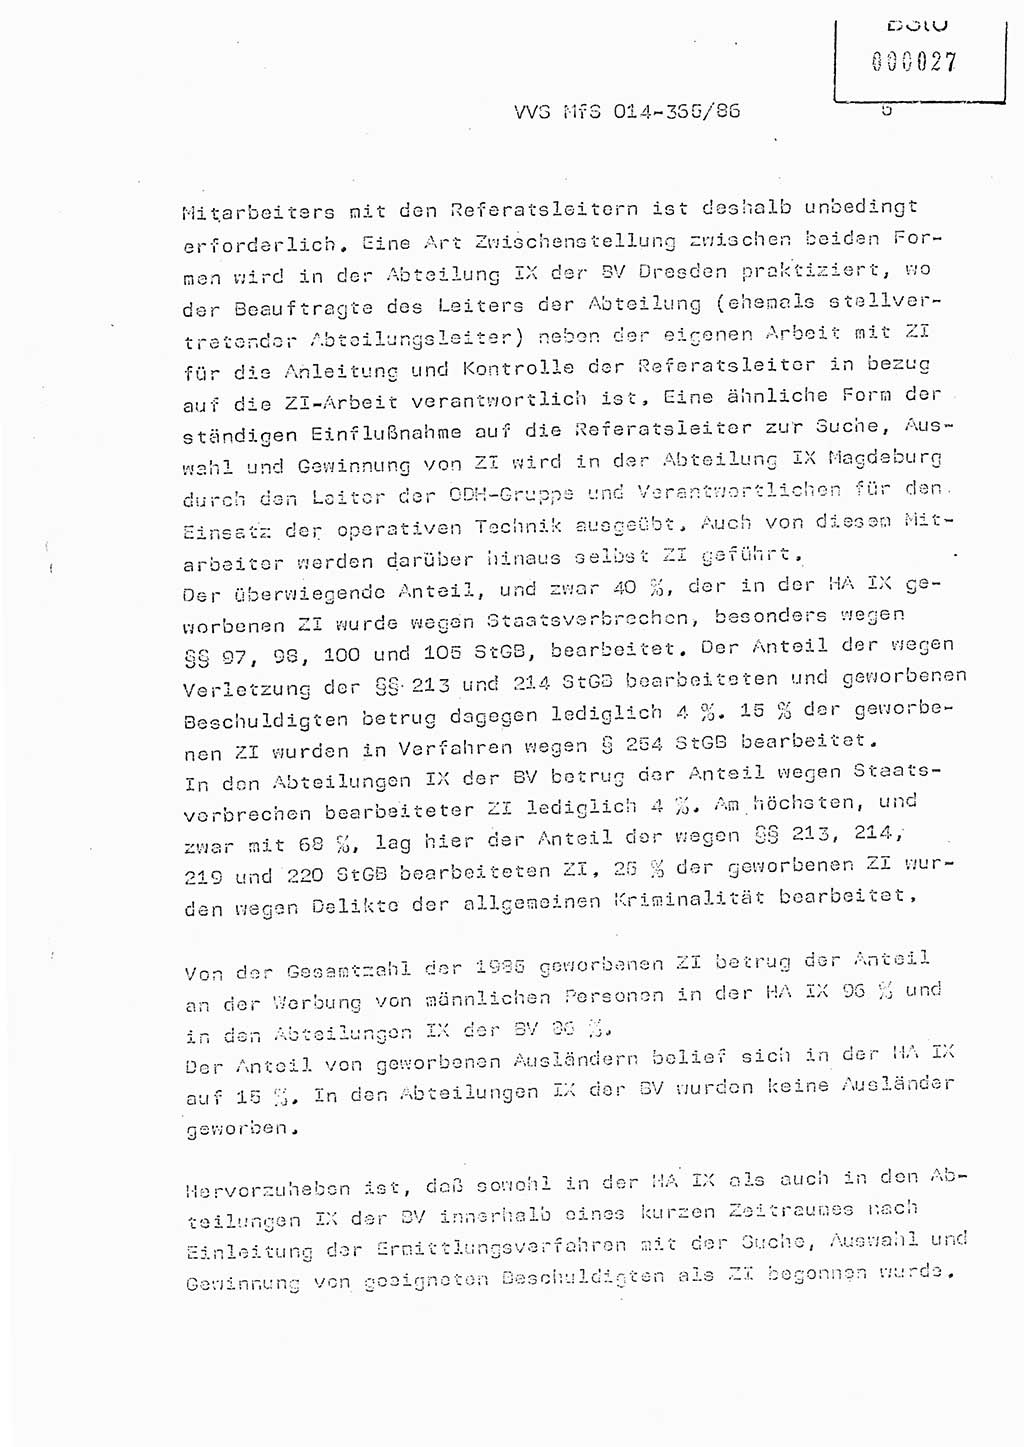 Ministerium für Staatssicherheit (MfS) [Deutsche Demokratische Republik (DDR)], Hauptabteilung (HA) Ⅸ/ Auswertungs- und Kontrollgruppe (AKG), Bereich Koordinierung, Jahresanalyse, Vertrauliche Verschlußsache (VVS) o014-365/86, Berlin 1985, Seite 5 (J.-Anal. MfS DDR HA Ⅸ/AKG VVS o014-365/86 1985, S. 5)